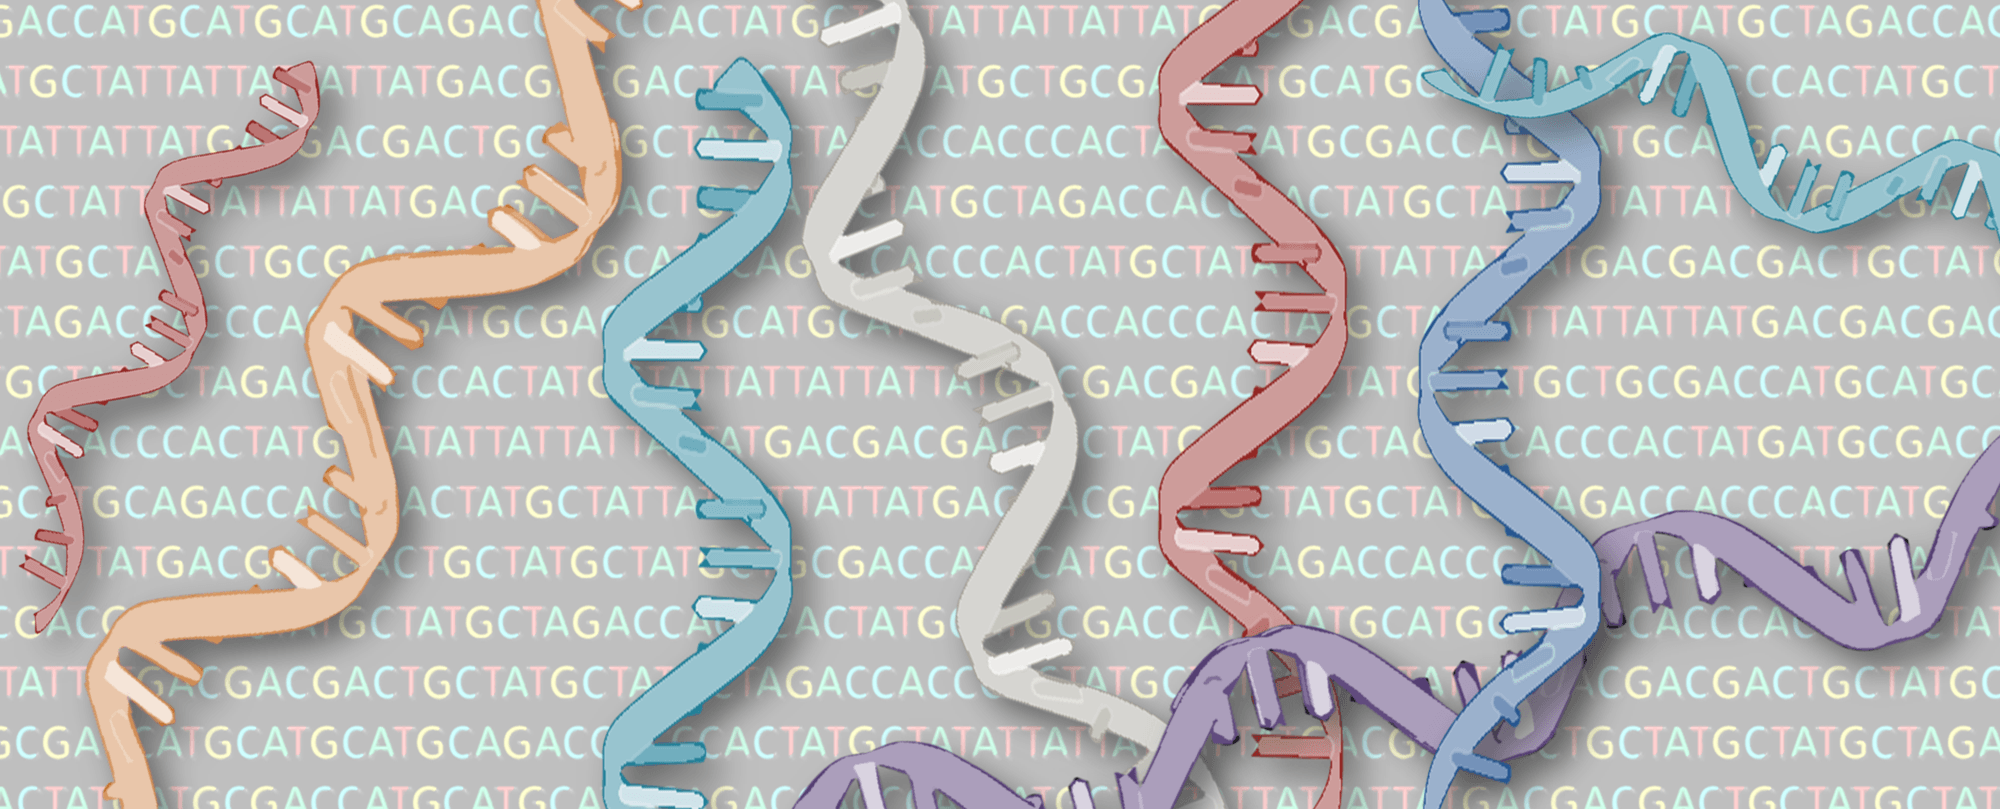 Científicos desarrollan una herramienta para controlar los procesos de transcripción del ADN